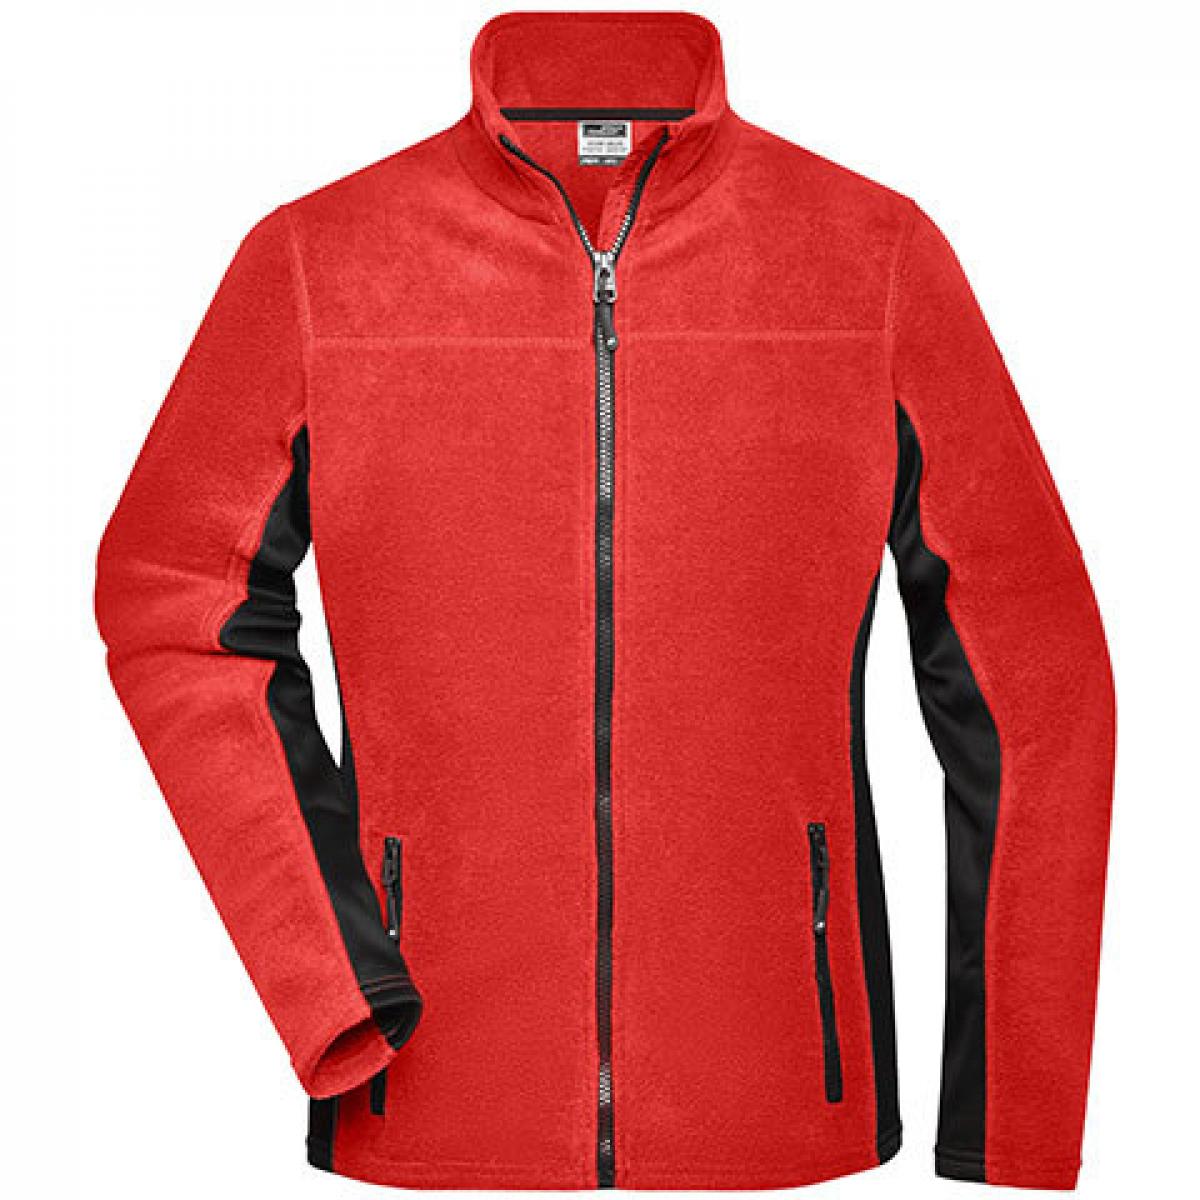 Hersteller: James+Nicholson Herstellernummer: JN841 Artikelbezeichnung: Damen‘ Workwear Fleece Jacket -STRONG- Farbe: Red/Black